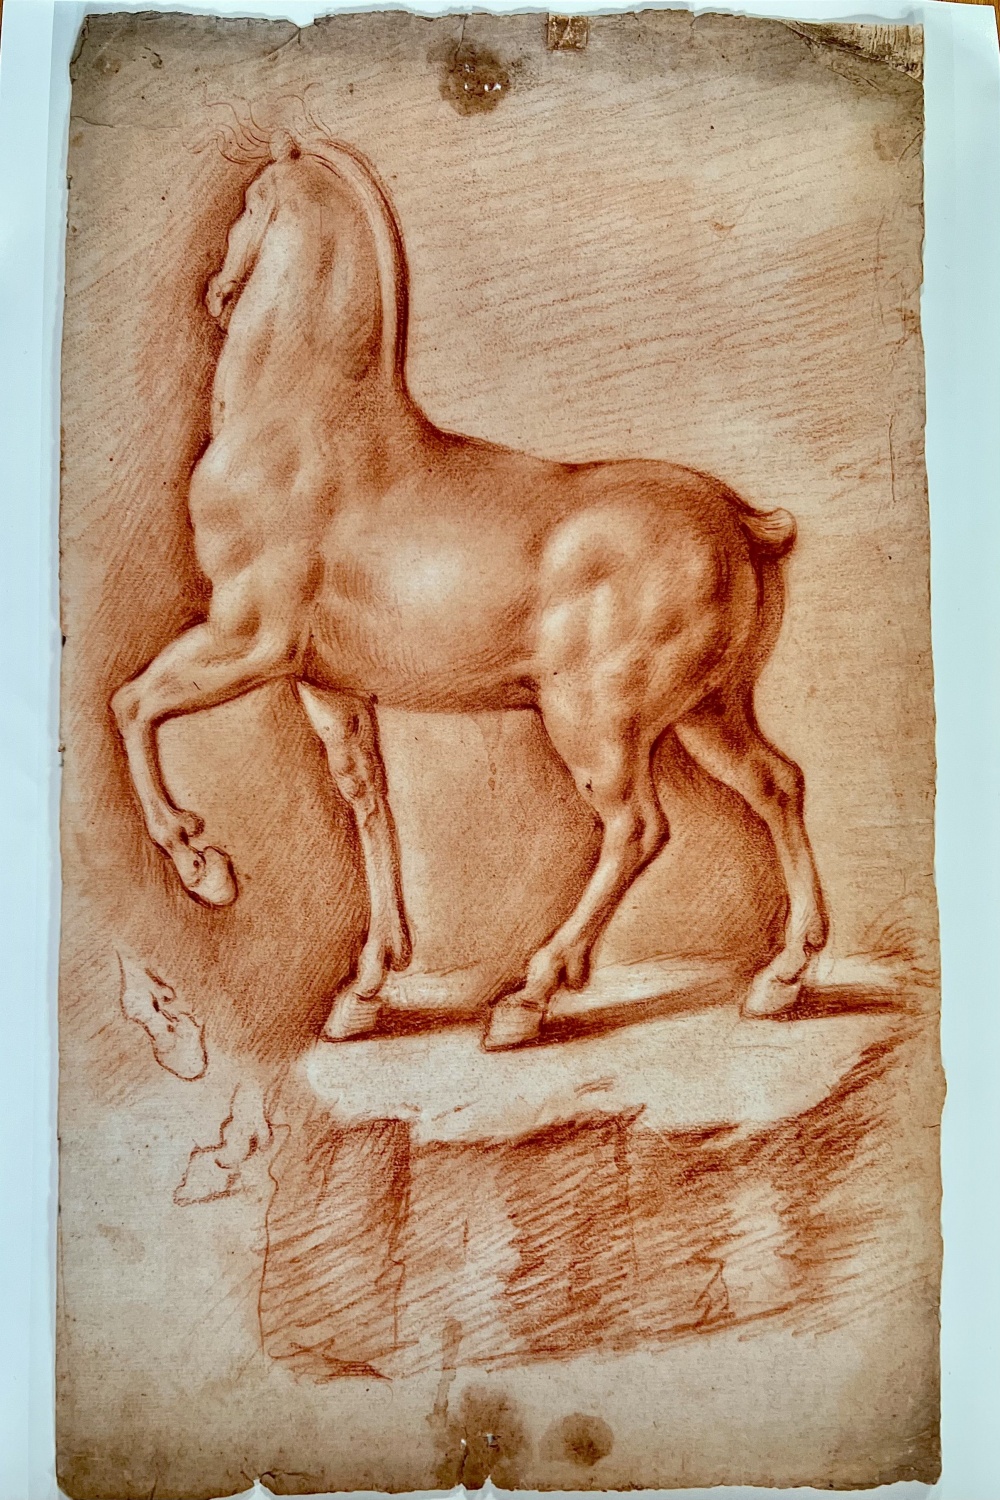 Presentato “cavallo ideale” di Leonardo da Vinci, disegno a san